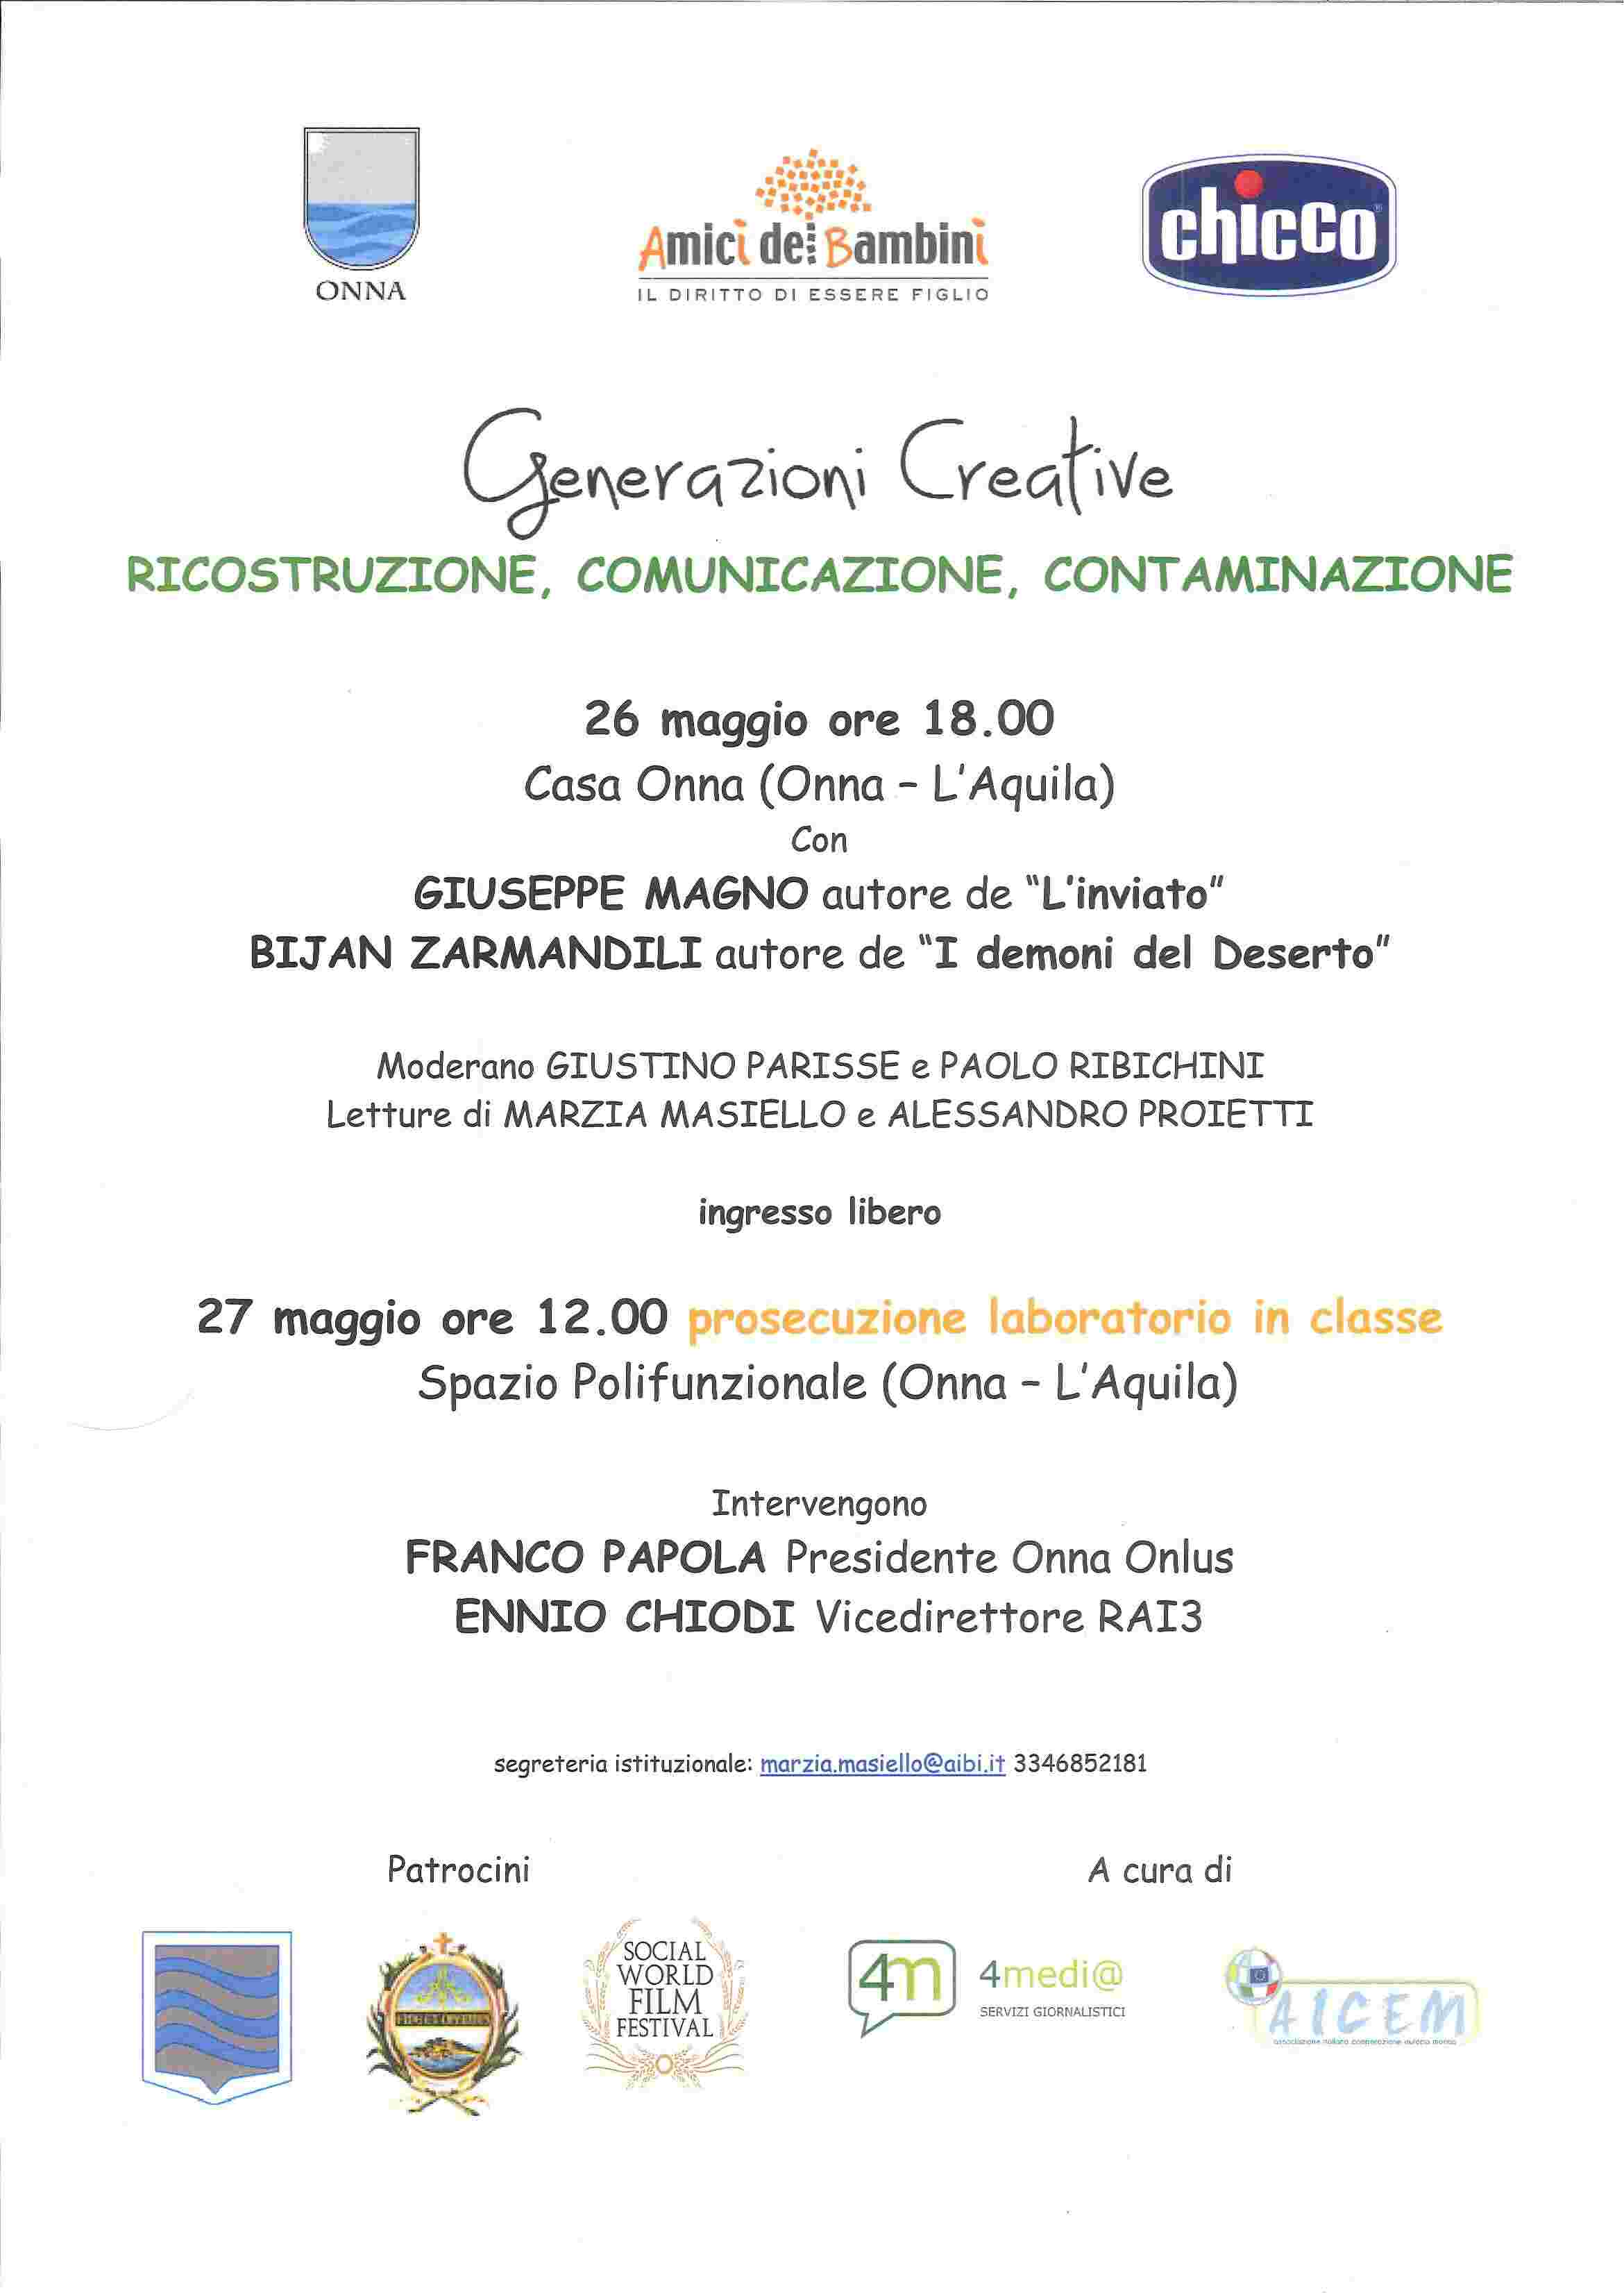 Onna (l'aquila) 26-27 maggio - Generazioni Creative: Ricostruzione, Comunicazione, Contaminazione